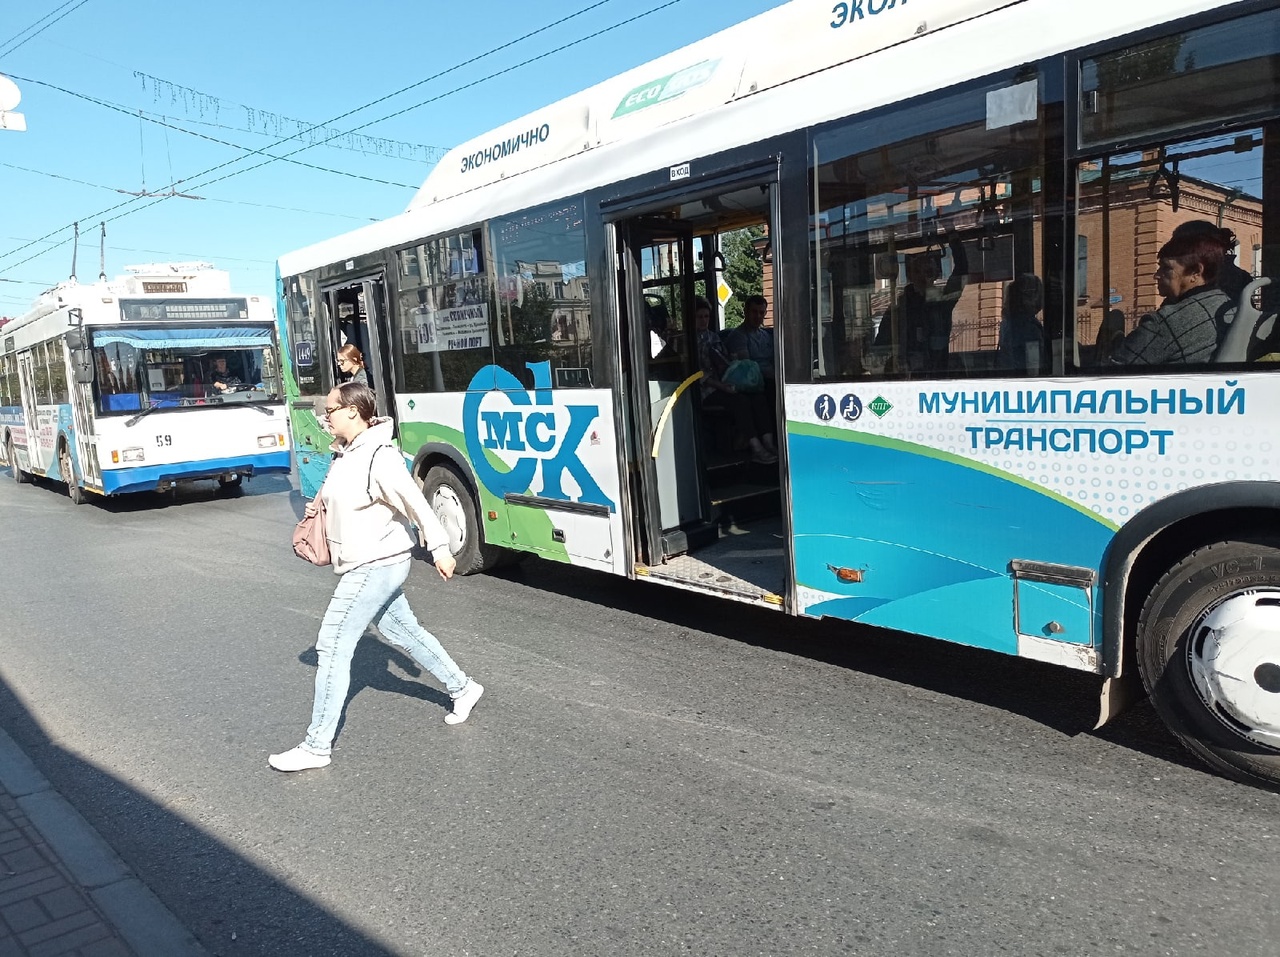 Для районов Омской области купят автобусов на 700 млн #Омск #Общество #Сегодня